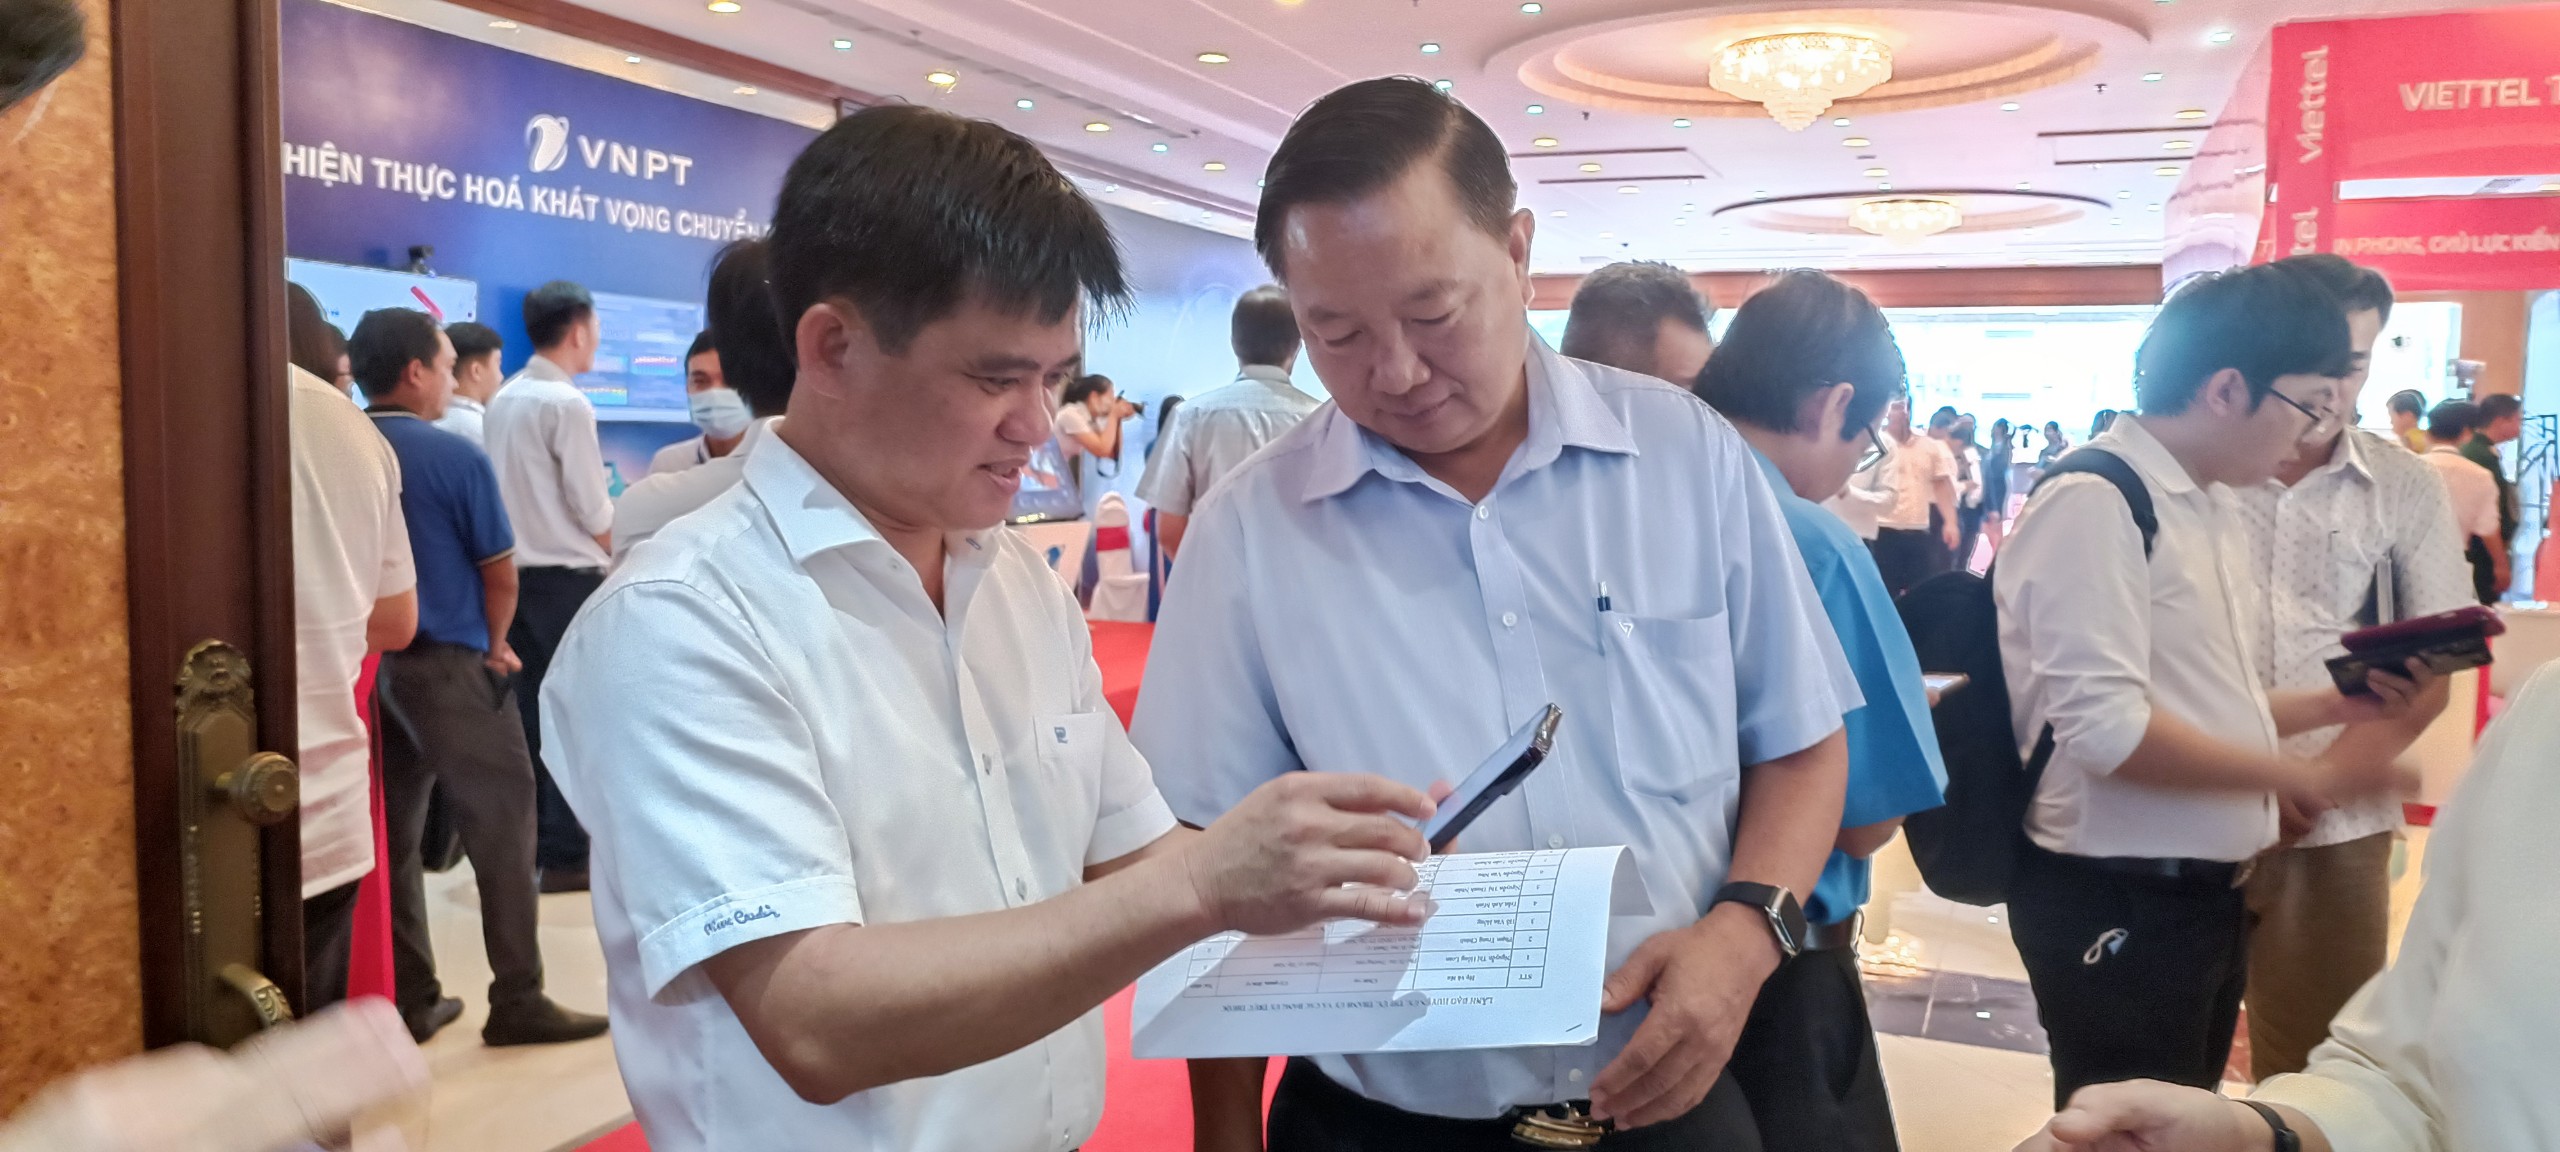 Tây Ninh lần đầu tiên tổ chức hội nghị chuyển đổi số - Ảnh 2.